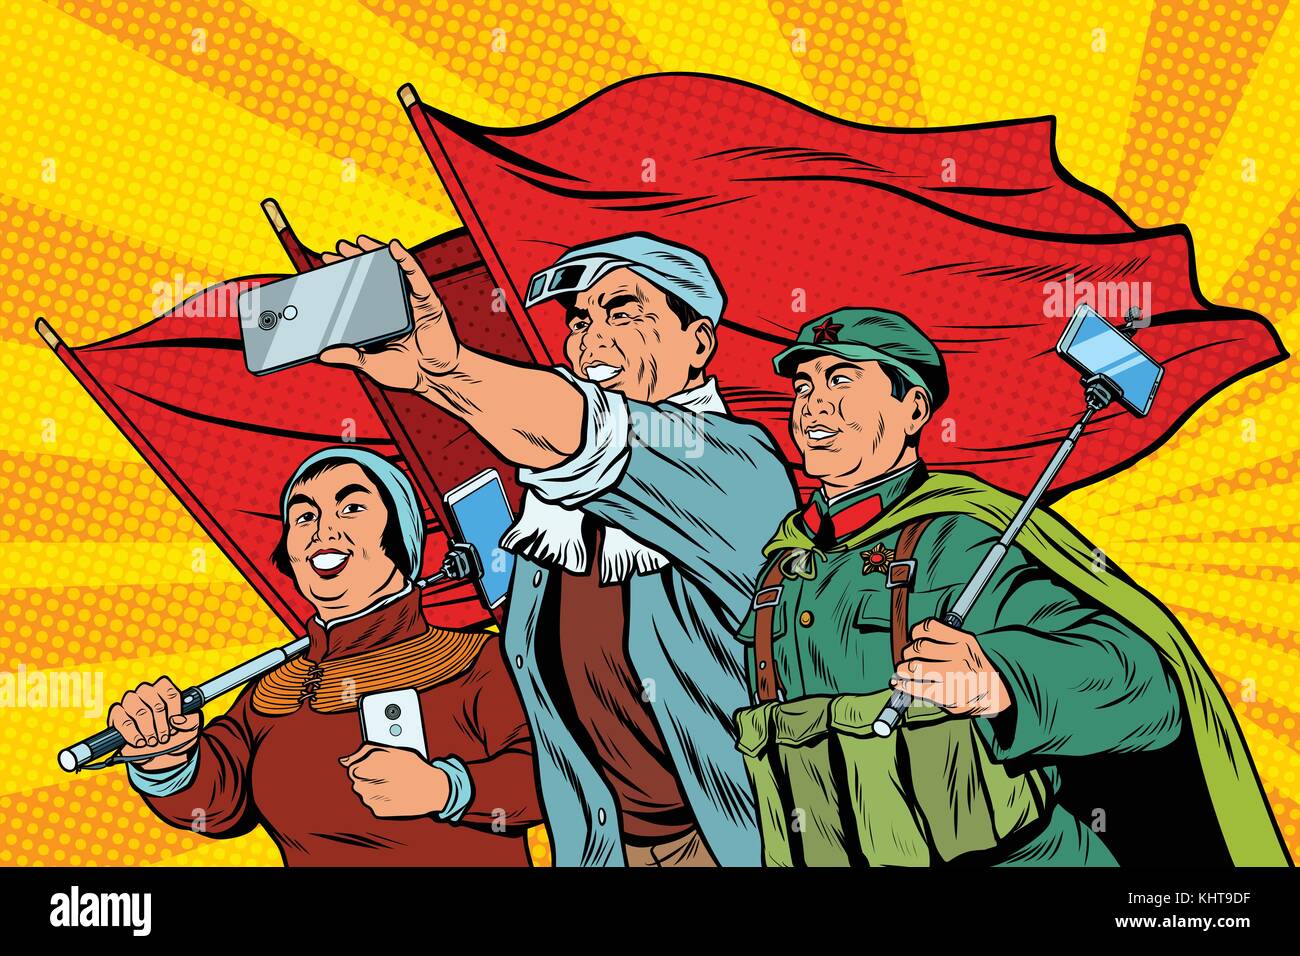 Chinesische Arbeiter mit Smartphones selfie, Poster sozialistischen Realismus. pop art retro Vektor illustration Stock Vektor